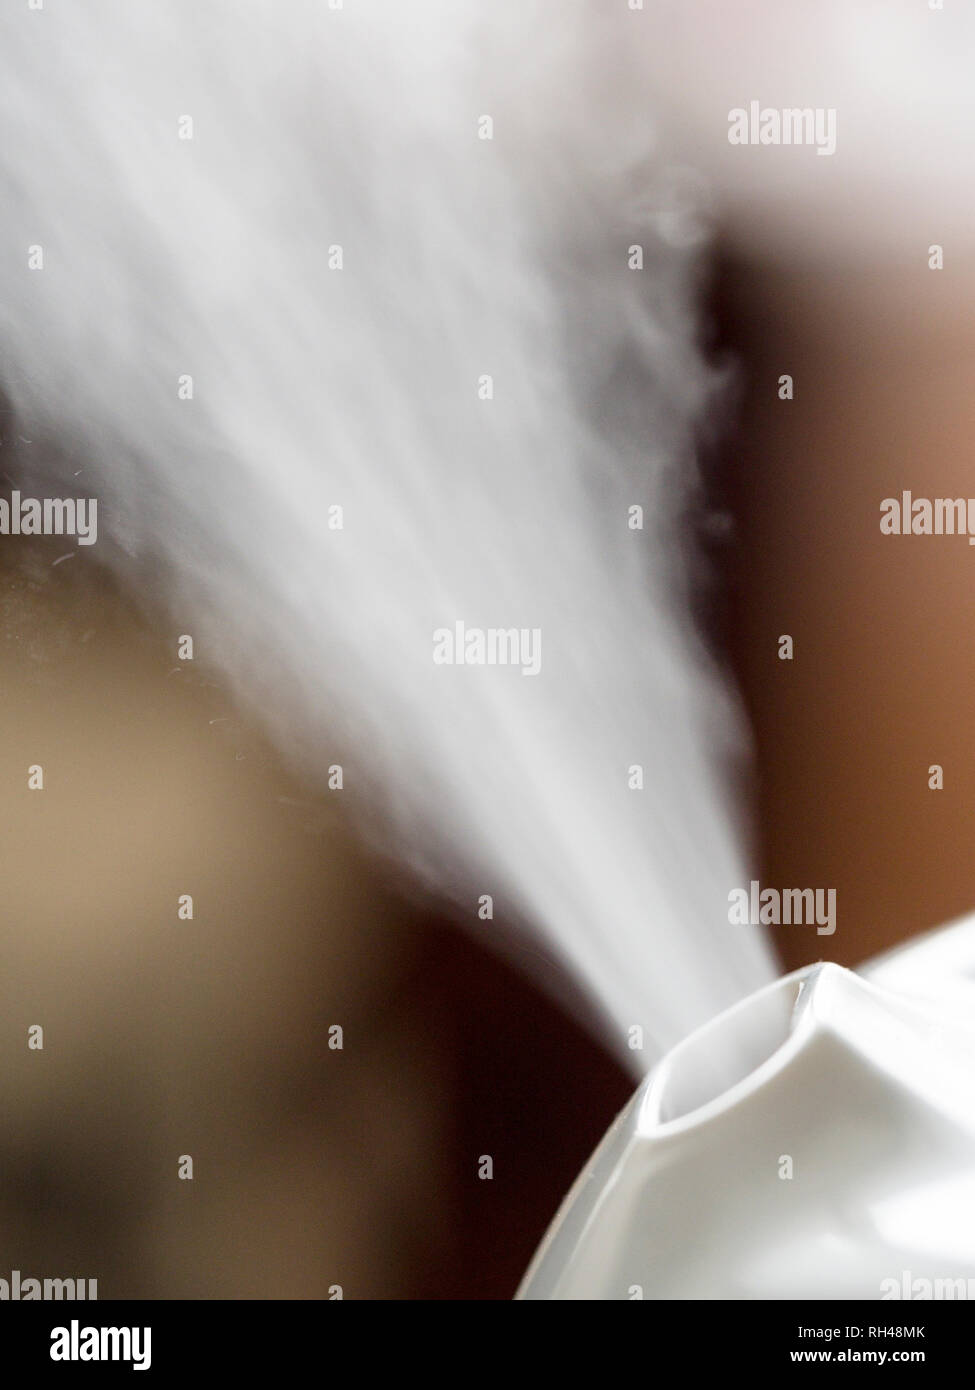 Nebbia fredda umidificatore: un nebulizzatore-basato umidificatore fuoriesce minuscole goccioline di acqua in aria per rais il tasso di umidità durante le fredde giornate invernali. Foto Stock